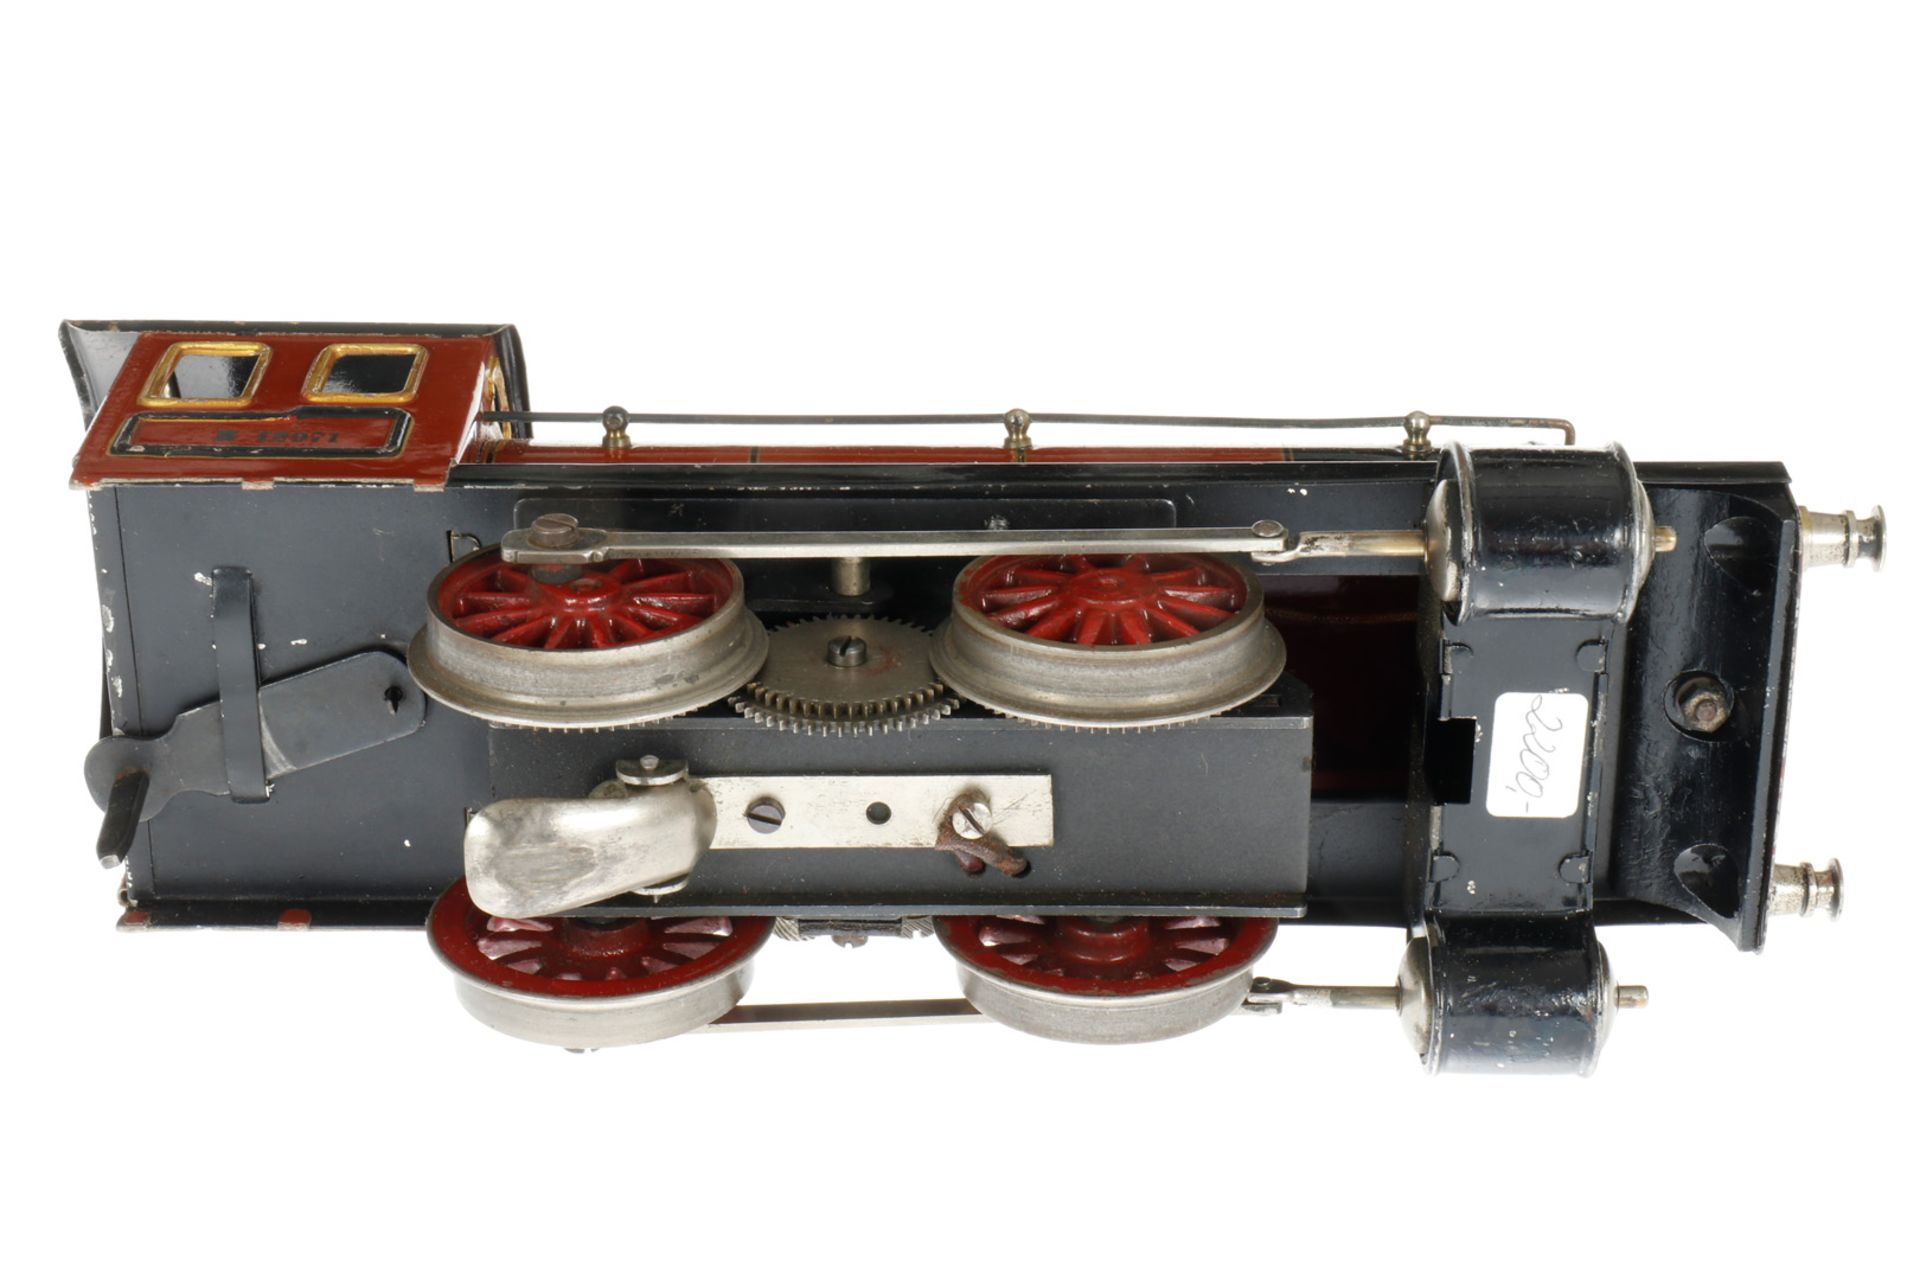 Märklin B-Dampflok R 12971, S 1, elektr., braun/schwarz, mit Tender und 1 el. bel. Stirnlampe, LS tw - Bild 4 aus 7